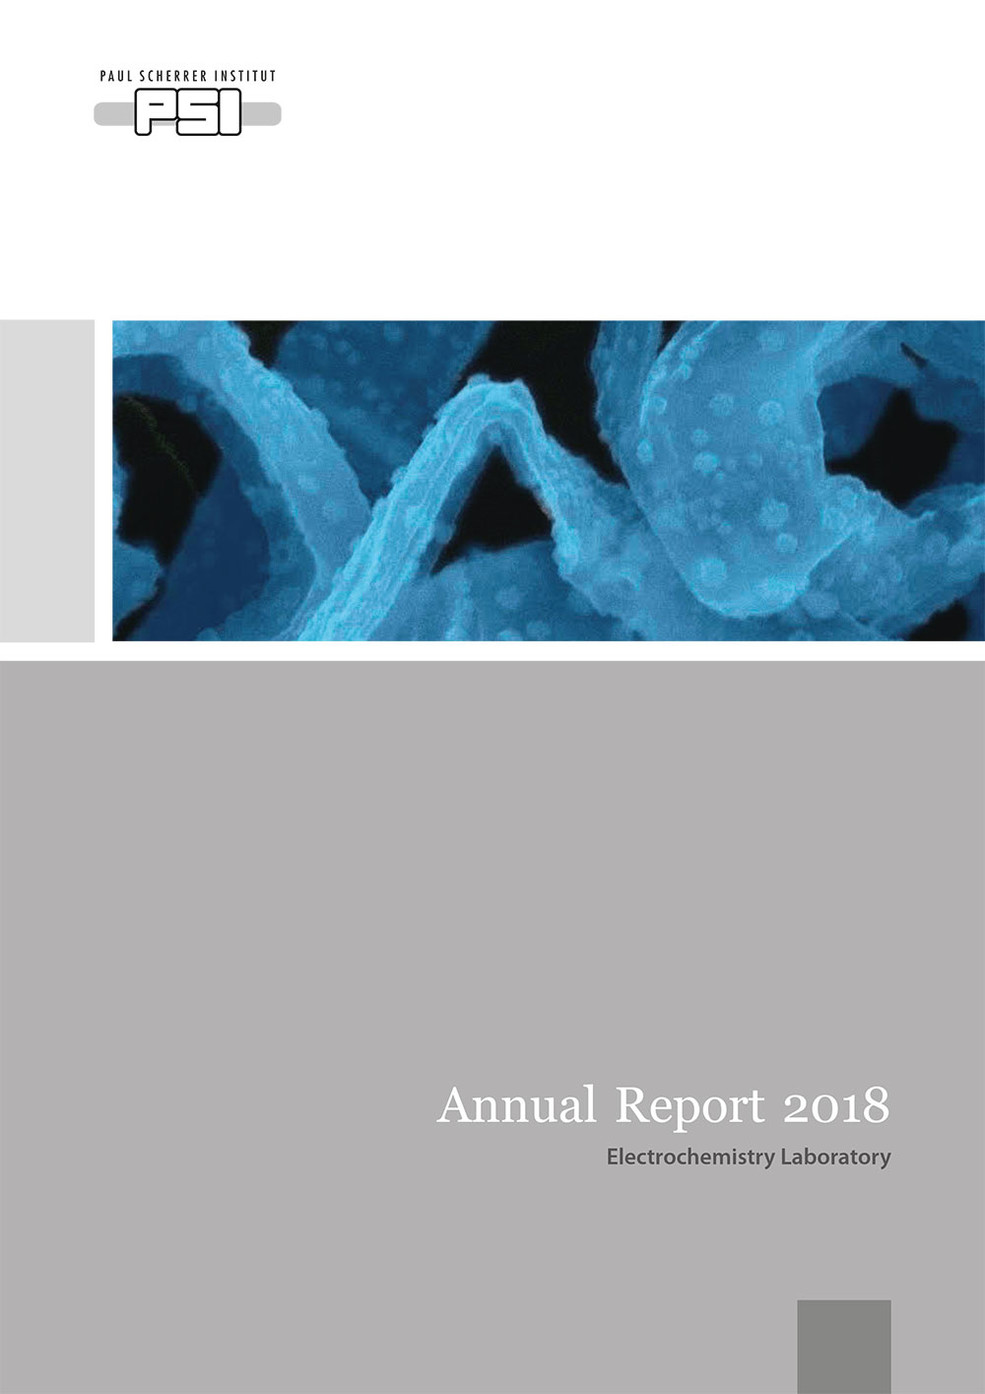 LEC annual report 2018